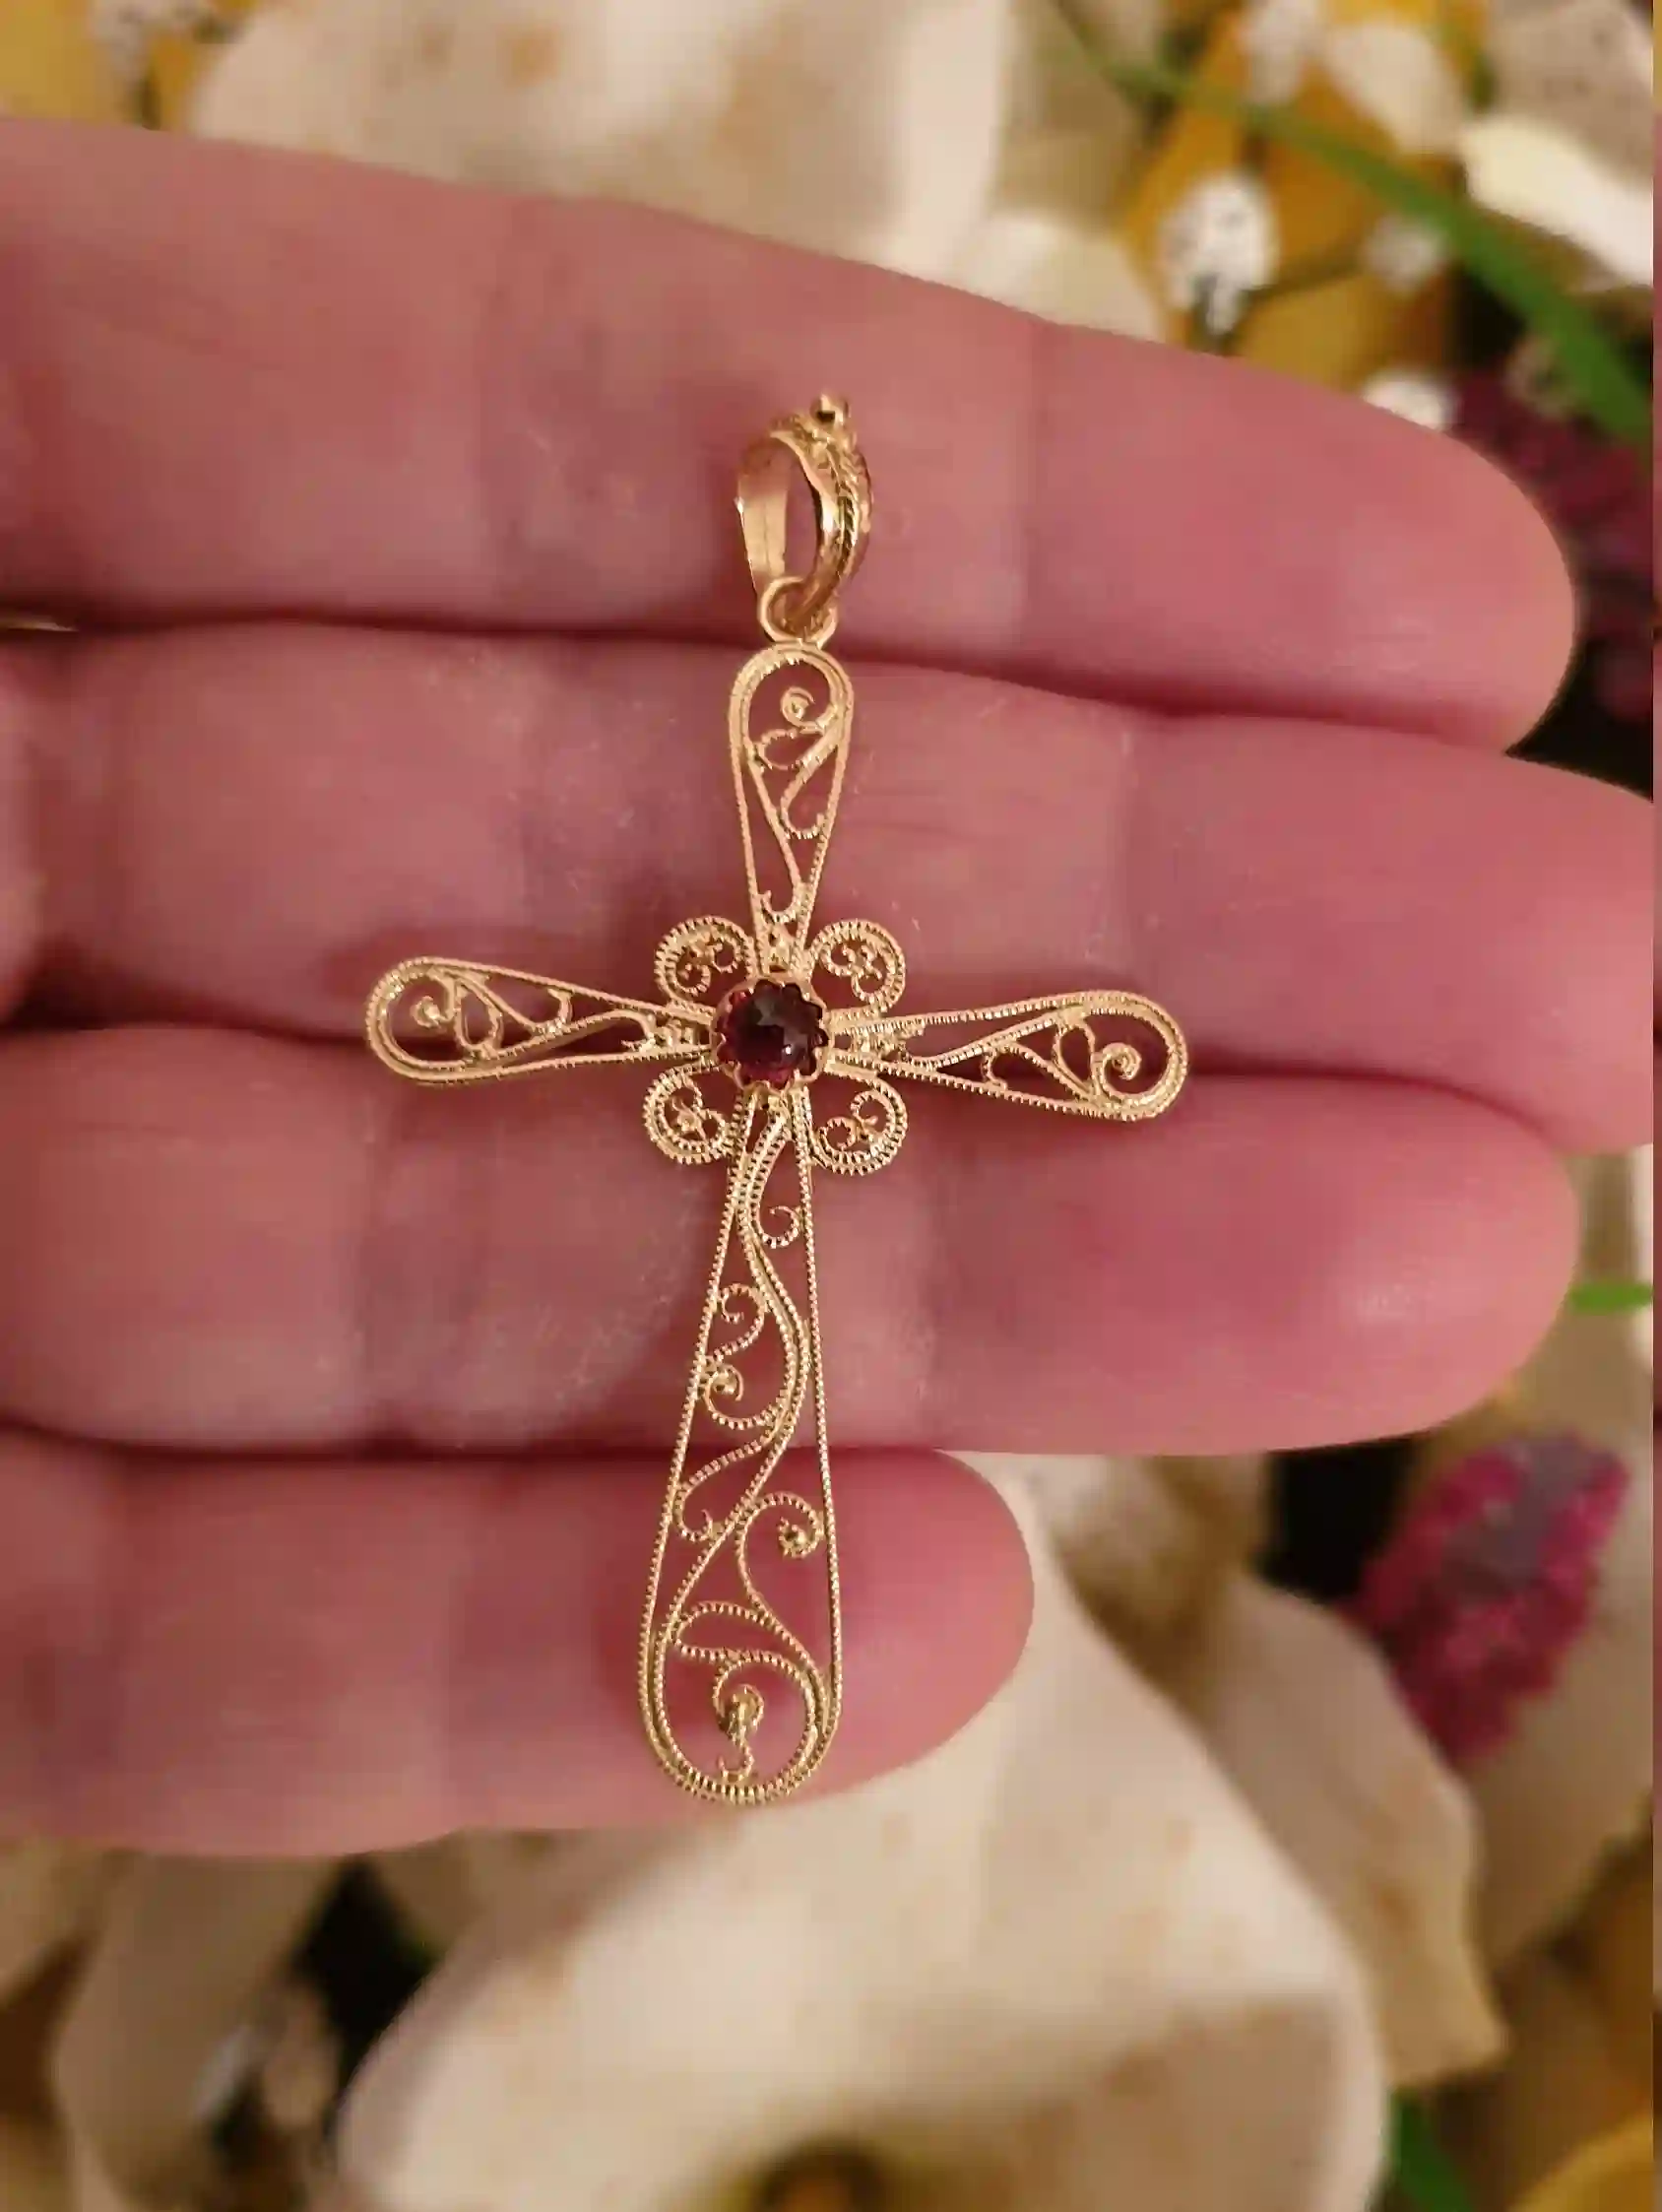 18Kt Solid GOLD Garnet Cross pendant gift for women/FILIGREE Gold Cross Charm Religious Jewelry Byzantin pendant 18k HANDMADE Christian gift 